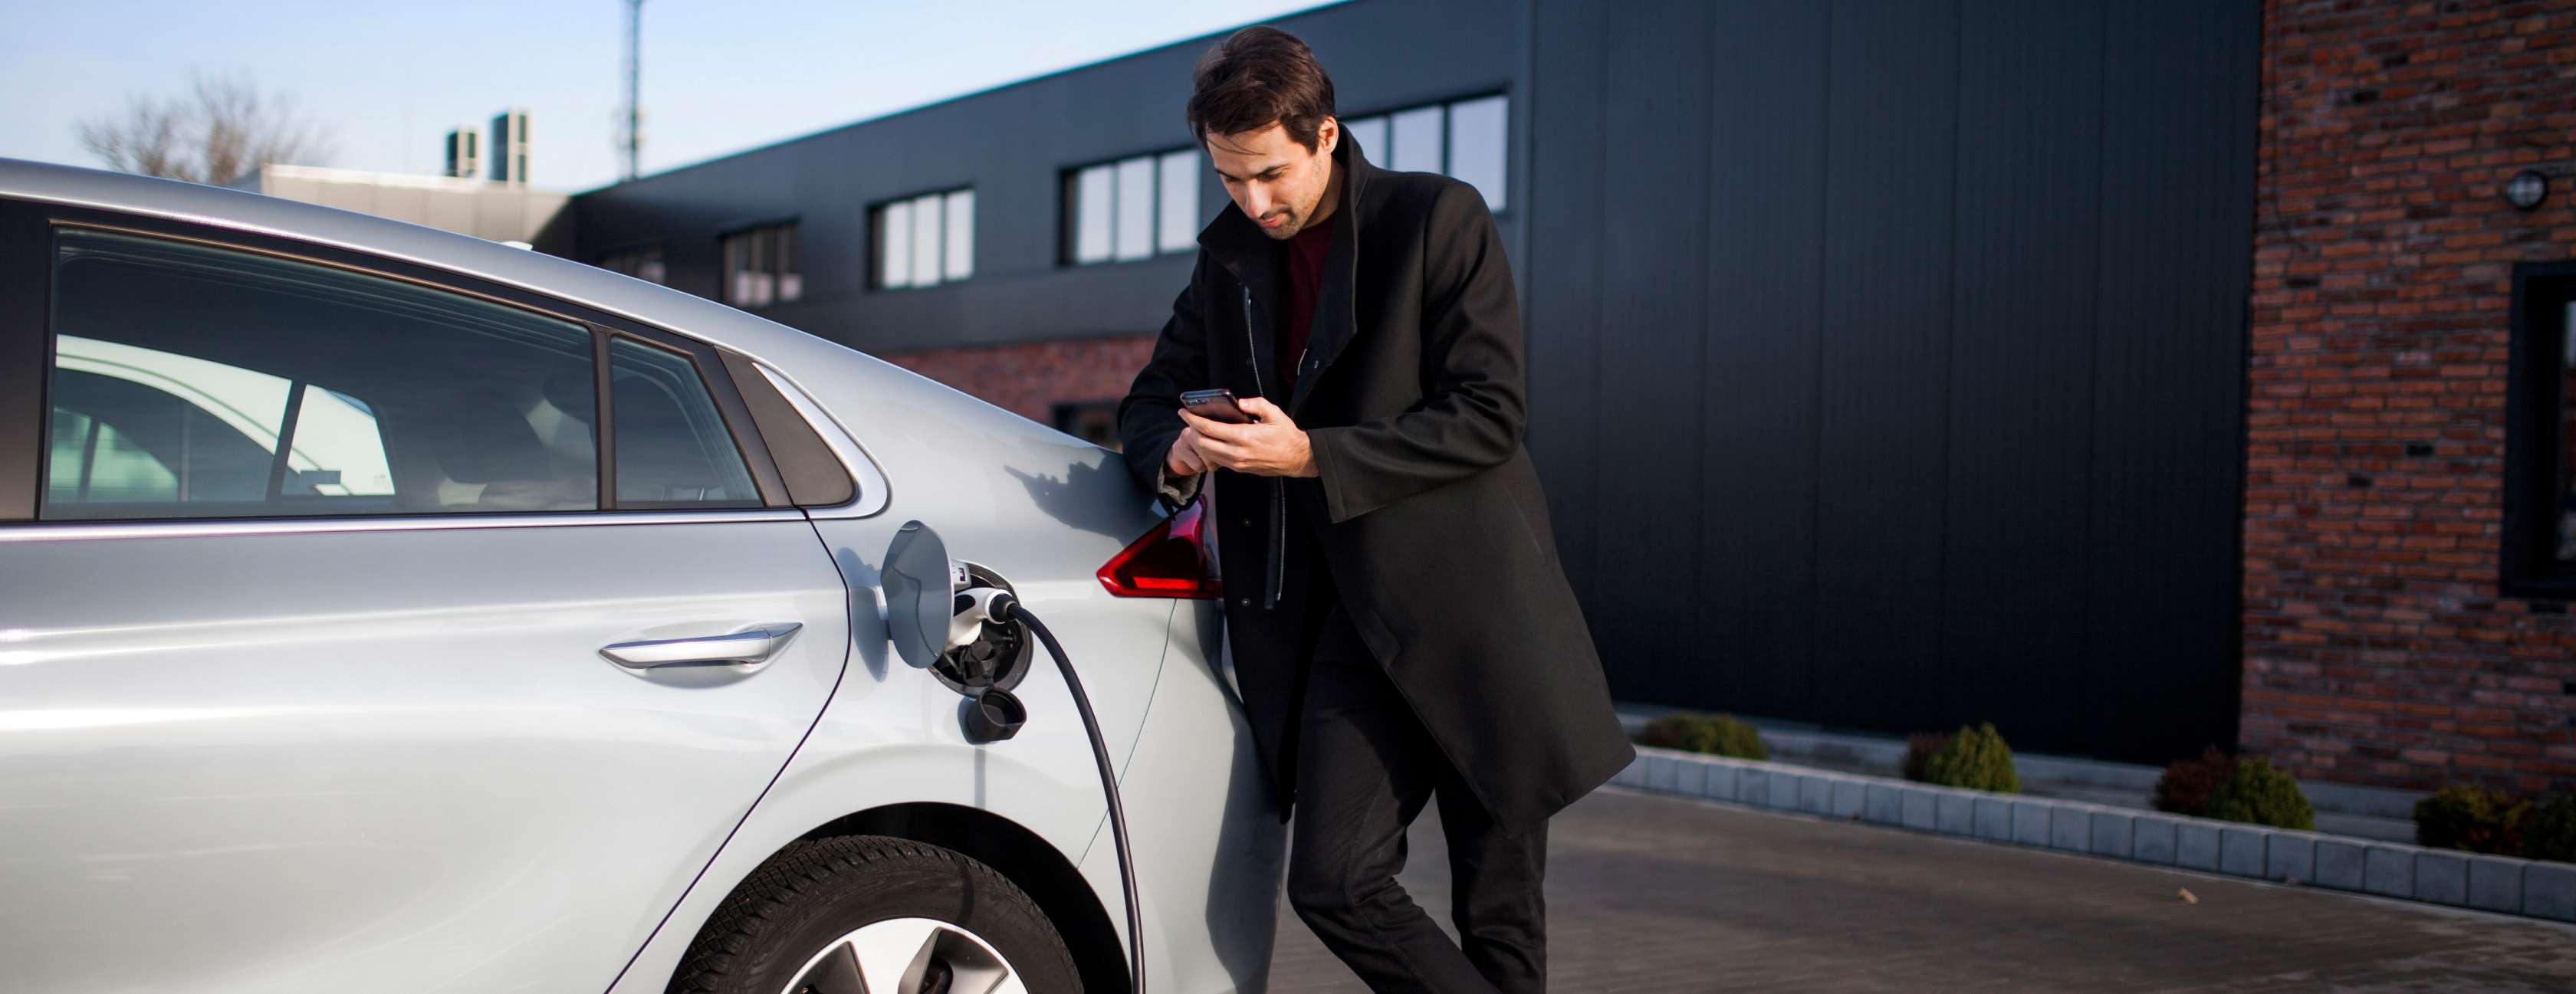 e-Mobility Angebote: Mann steht an einem E-Auto, das gerade aufgeladen wird und schaut in sein Mobiltelefon.